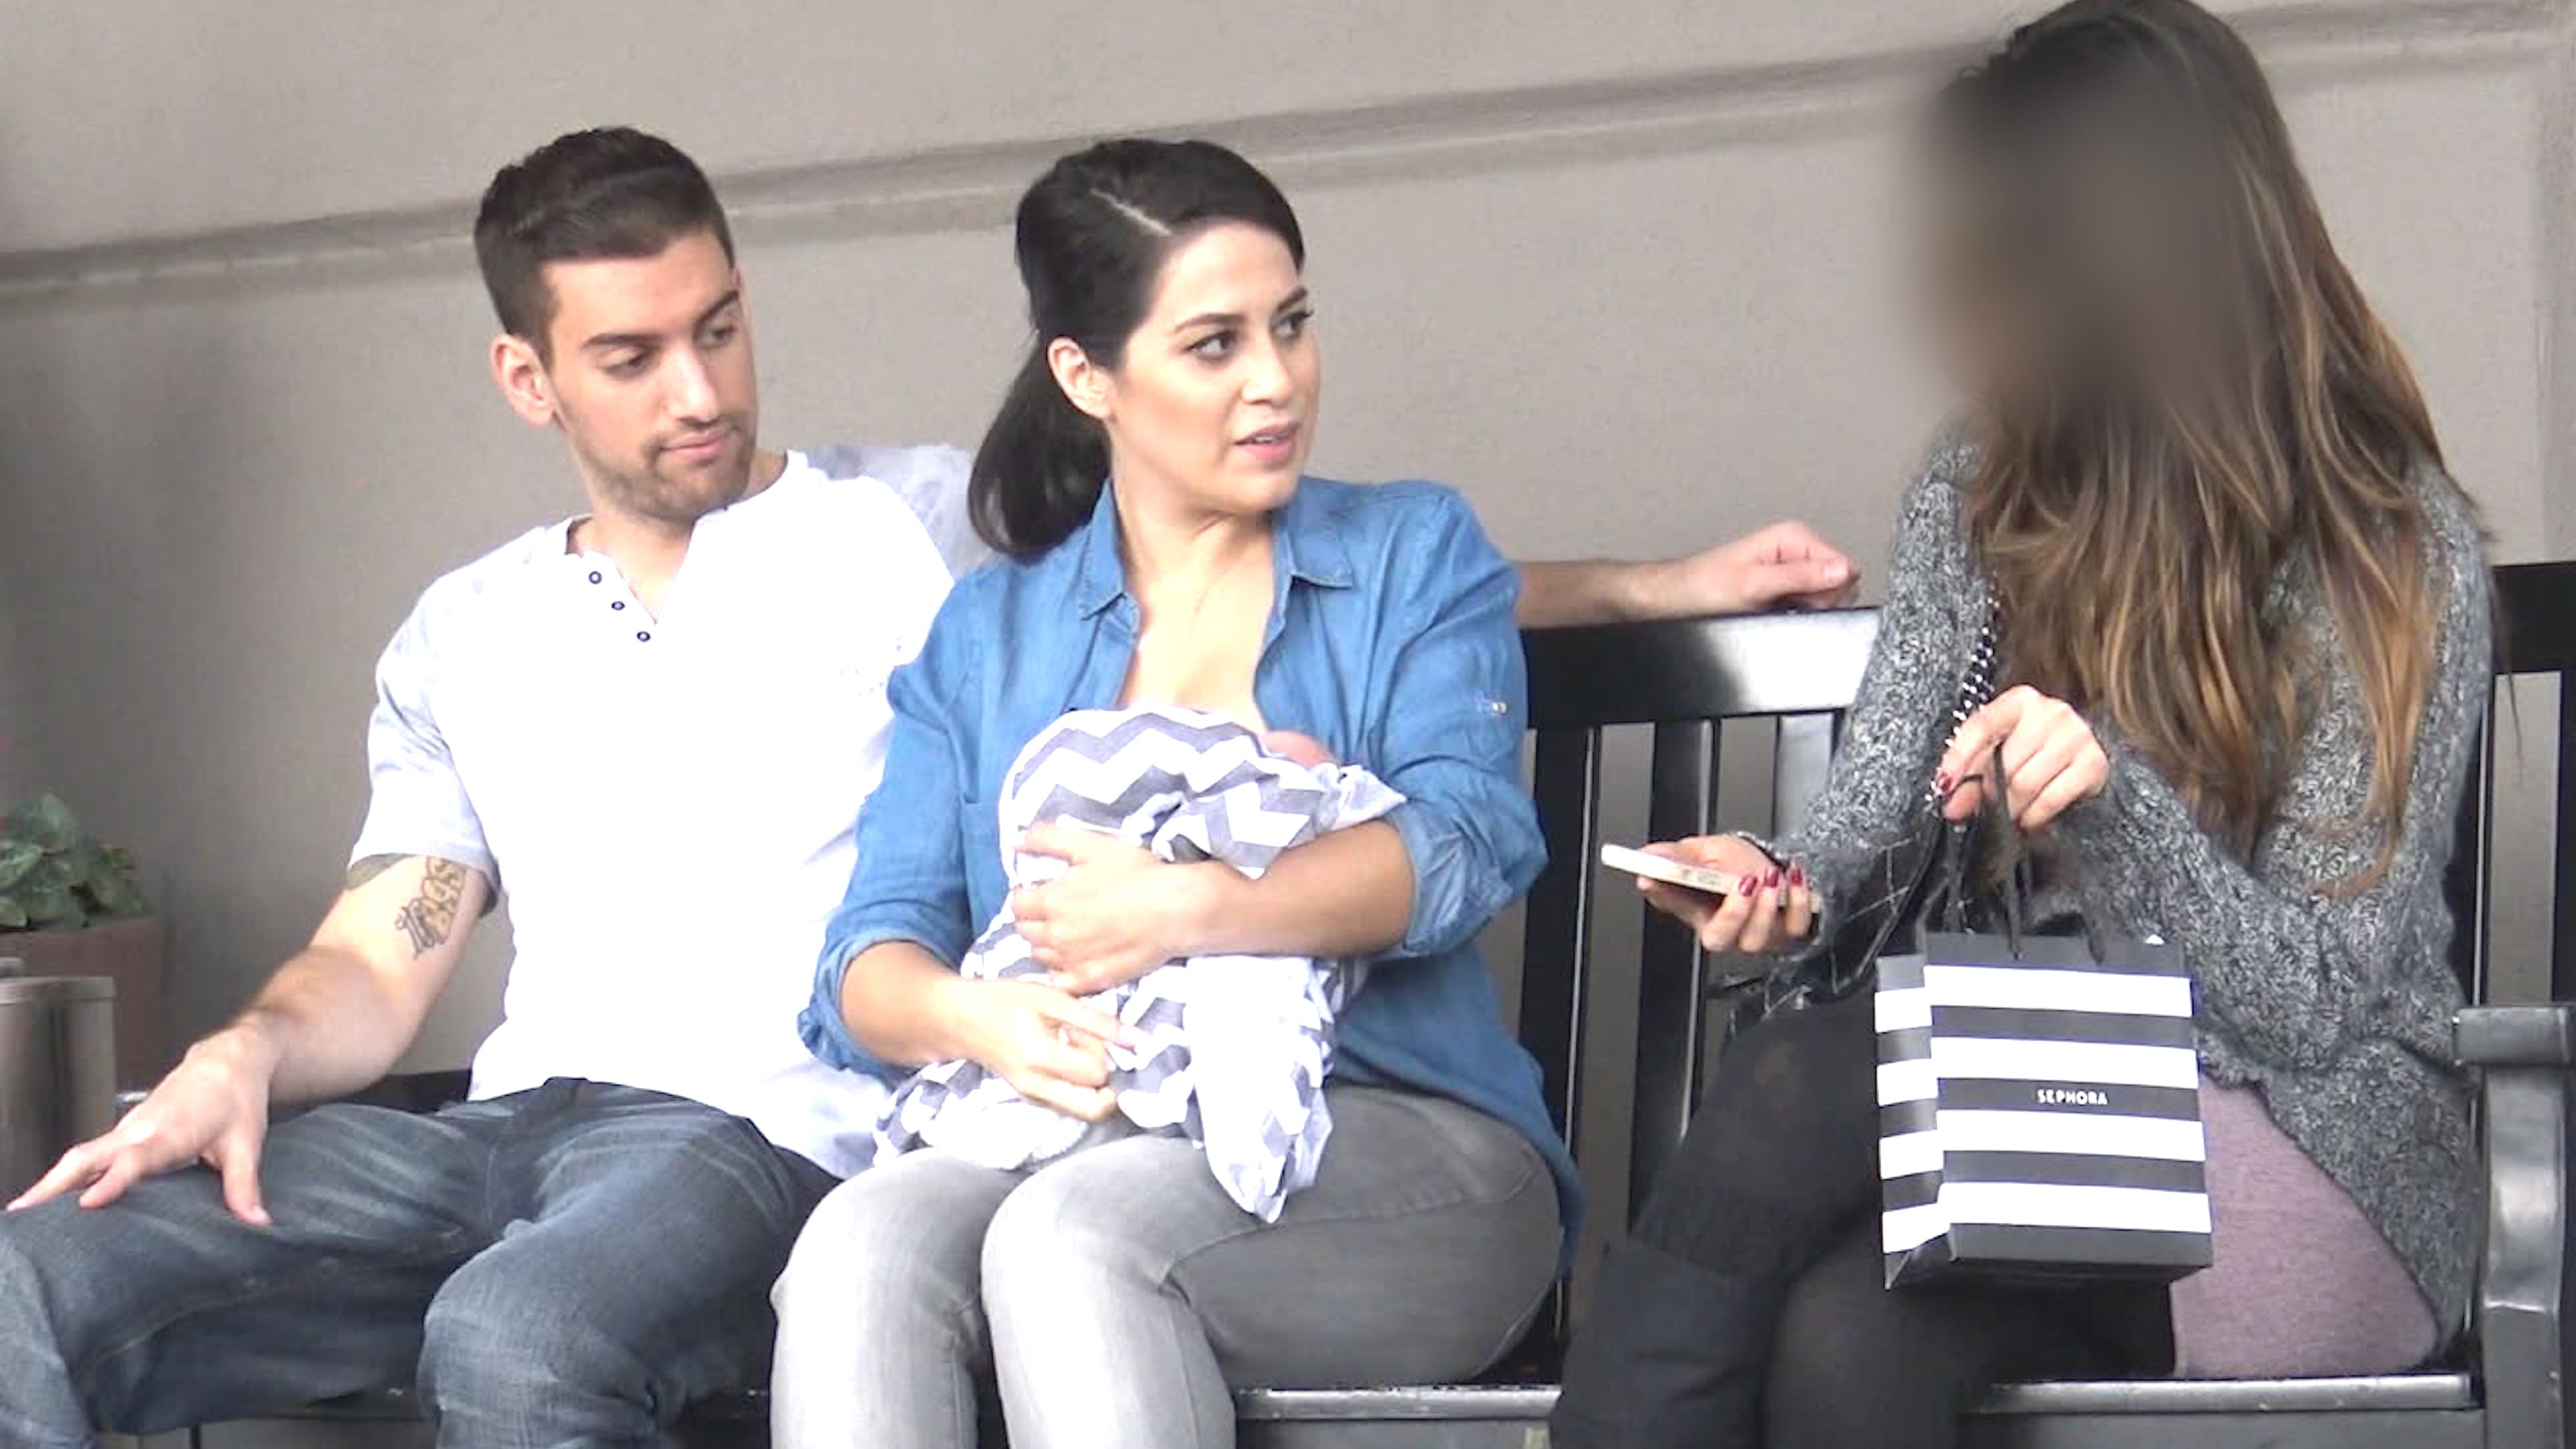 VIDEO: Viņa atkailināja savu krūti, lai pabarotu zīdaini. Kā uz to reaģēja apkārtējie cilvēki!?